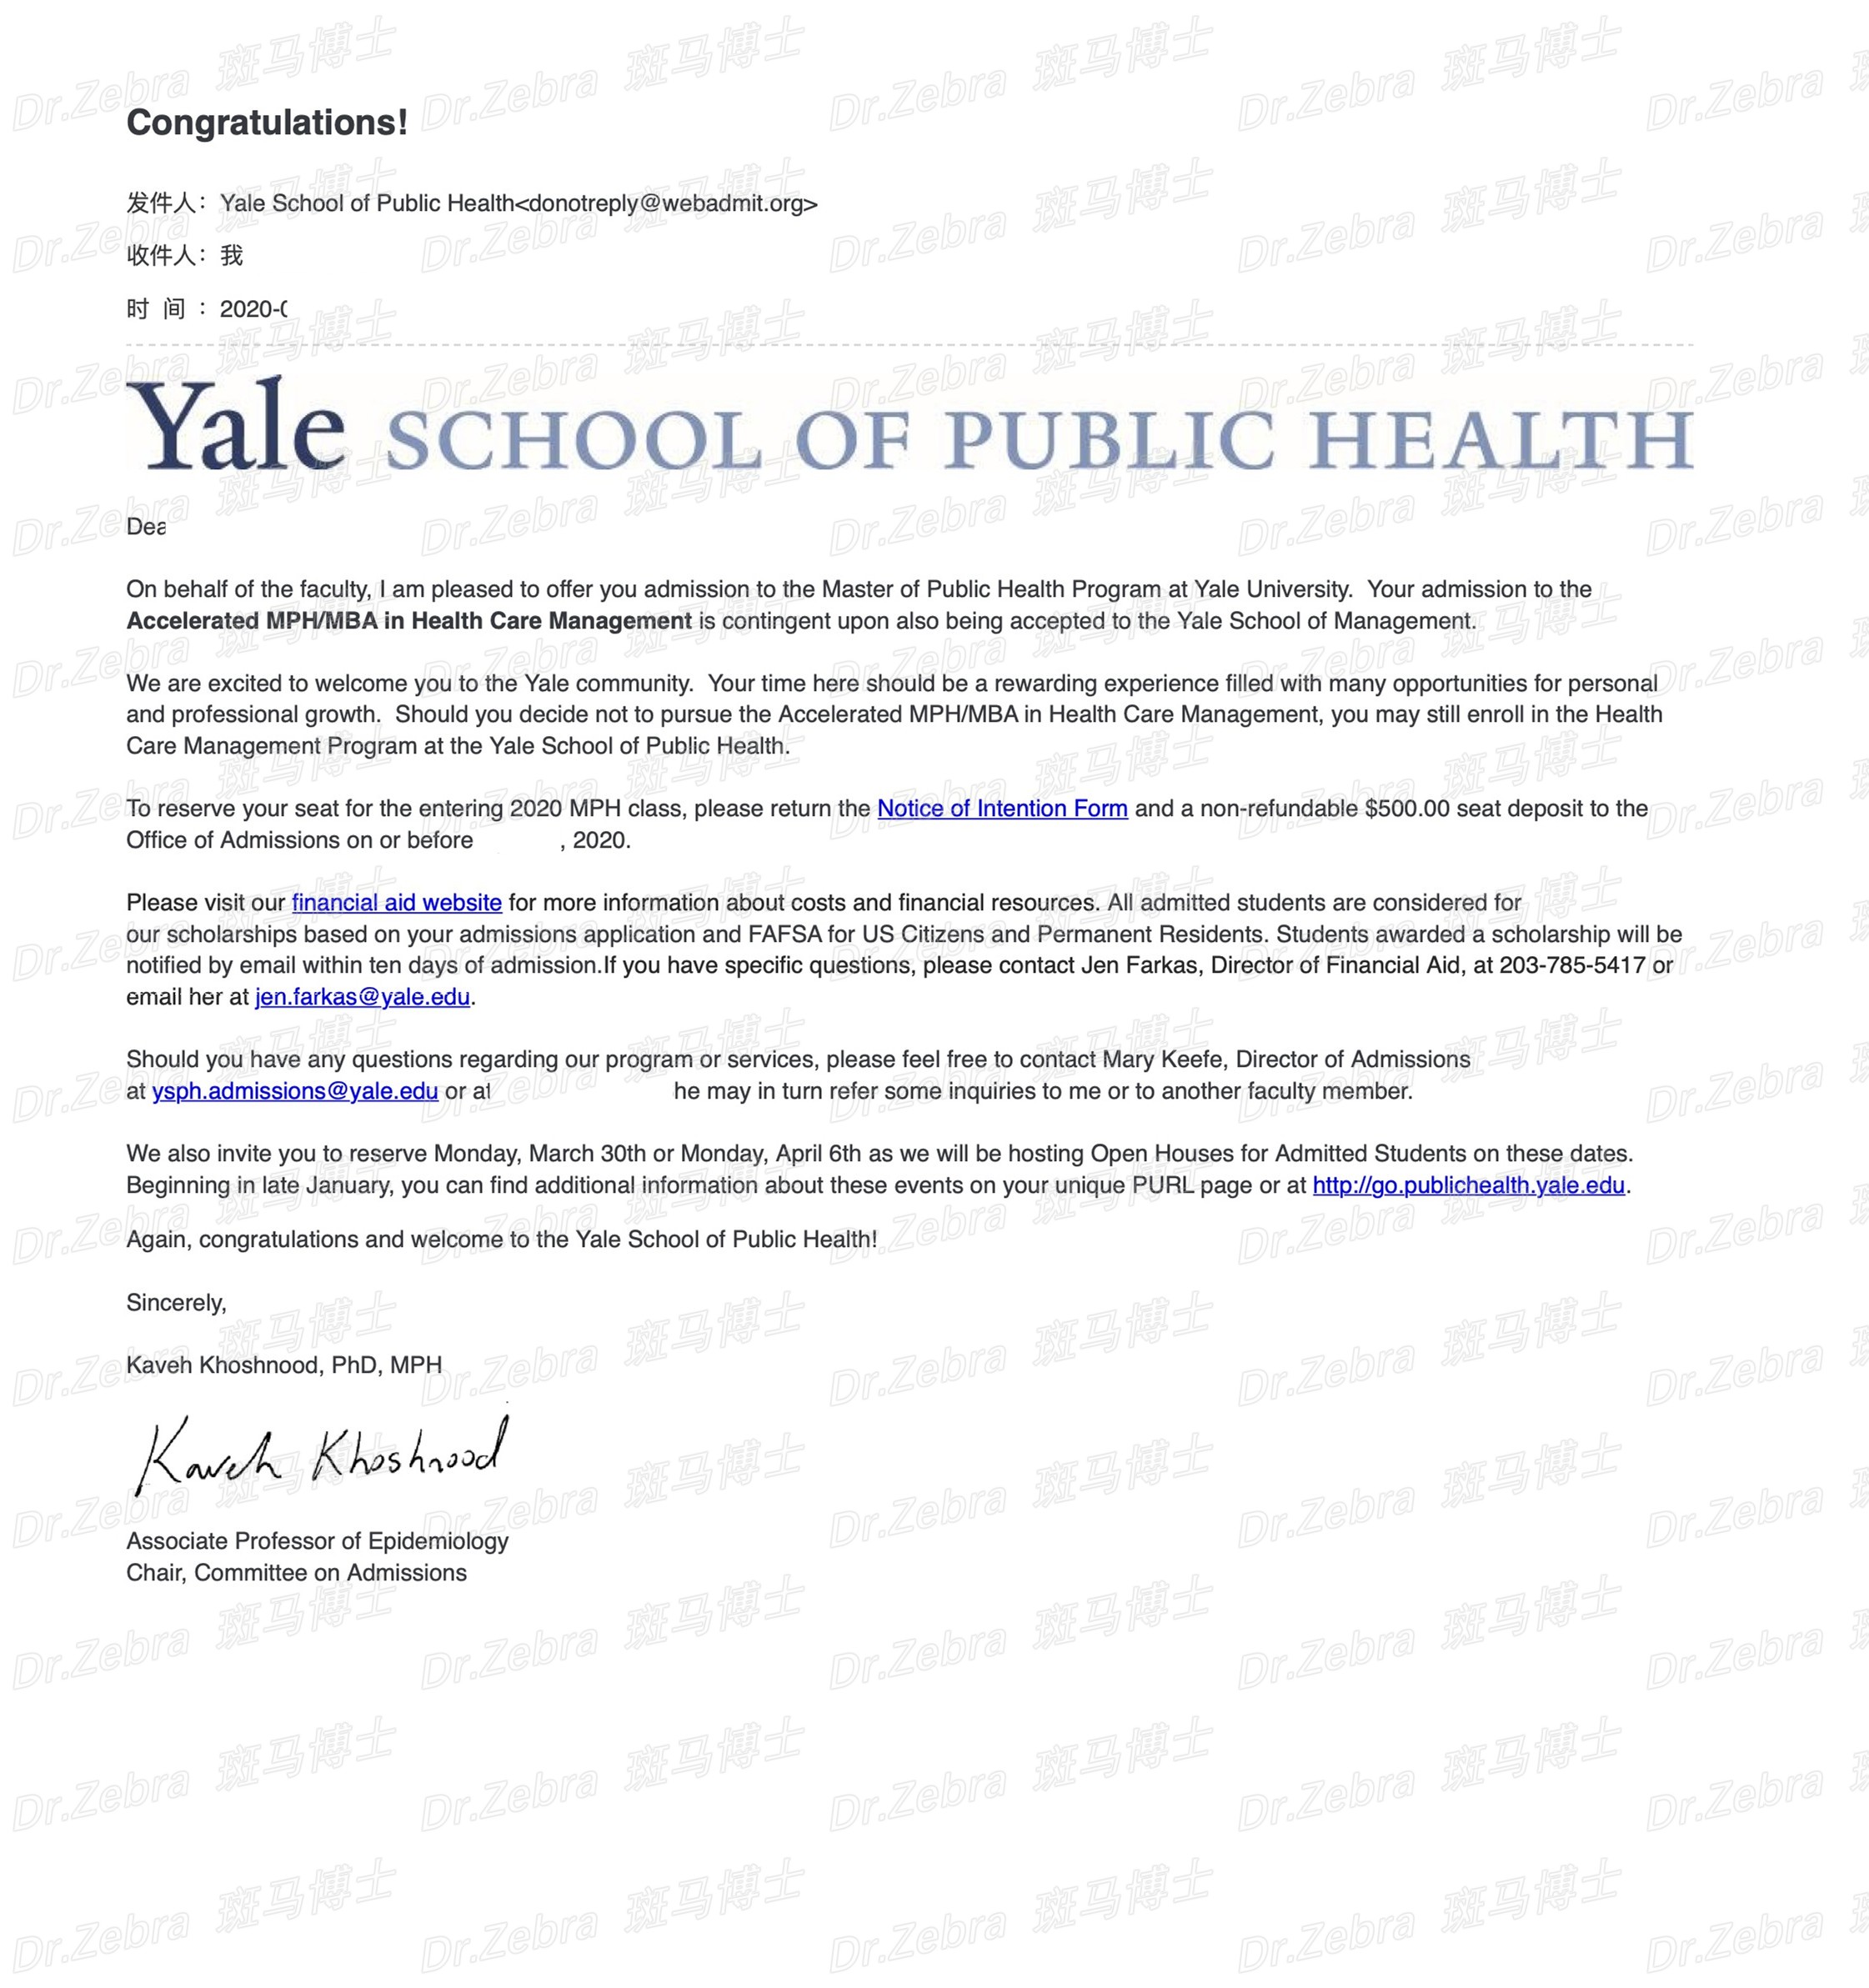 斑马博士、斑马博士留学中心、耶鲁大学、Yale University、Yale、Accelerated MBA/MPH in Health Care Management